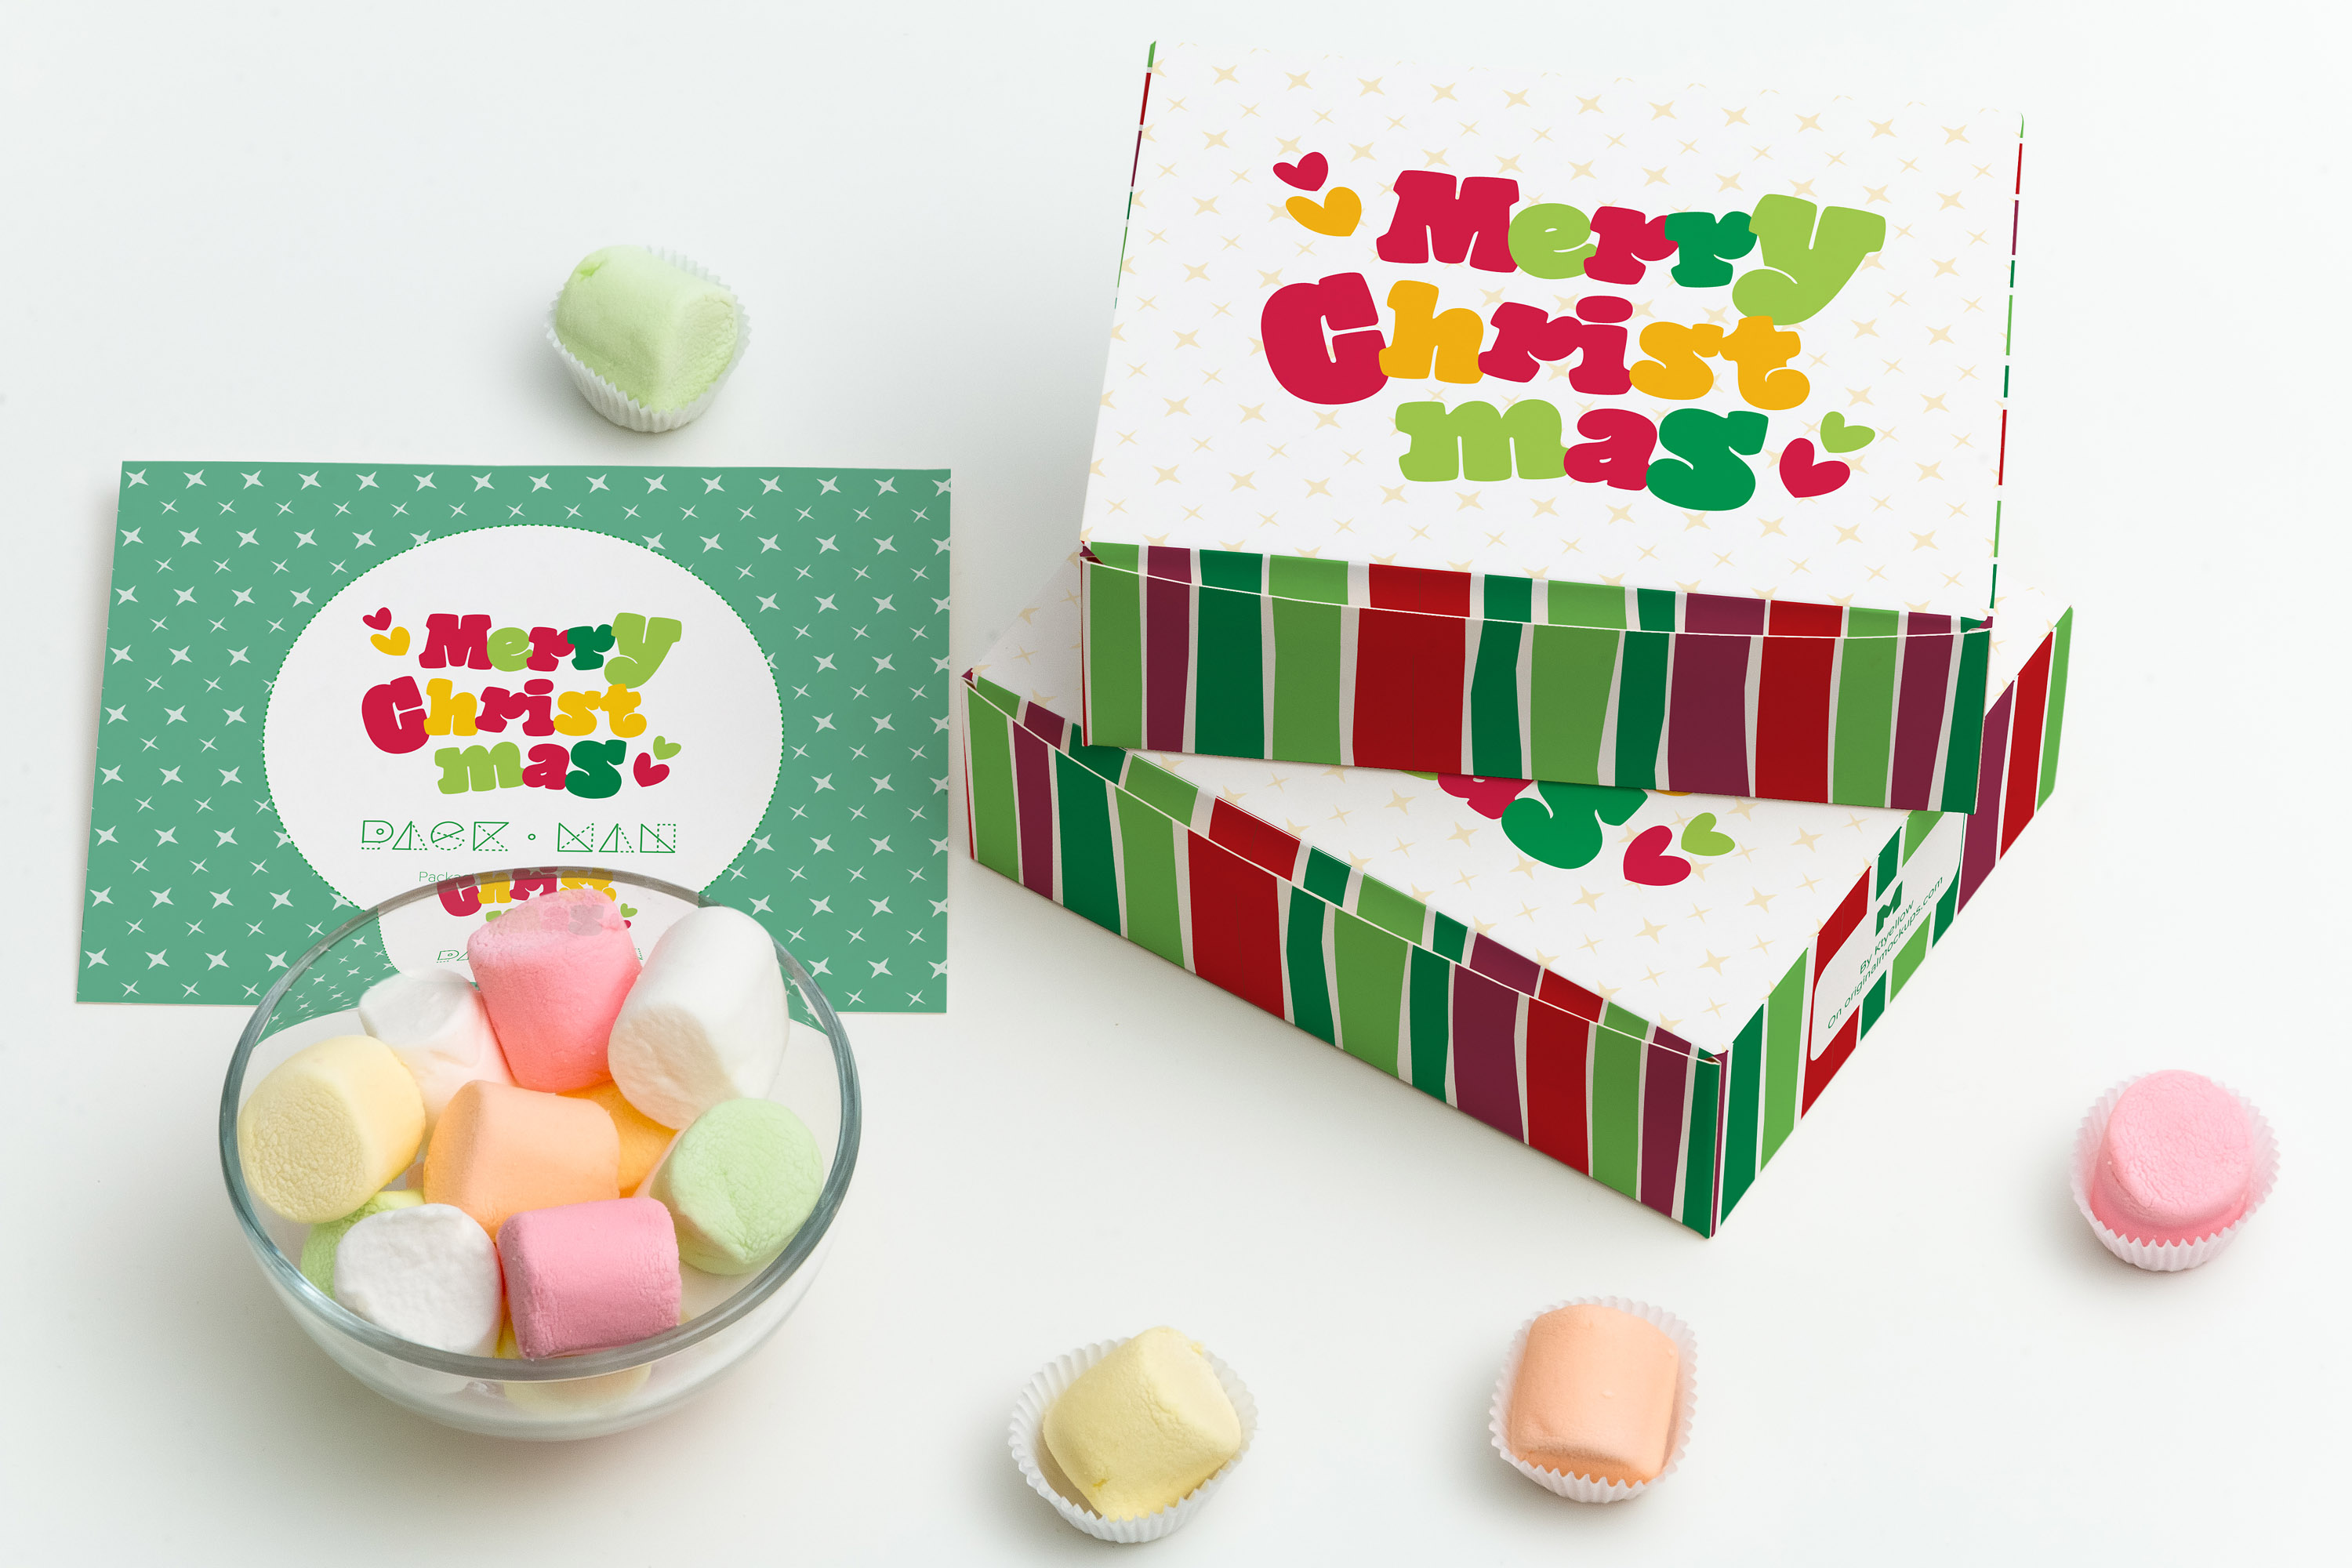 甜品包装礼盒设计图预览样机05 Sweet Box Mockup 05插图1